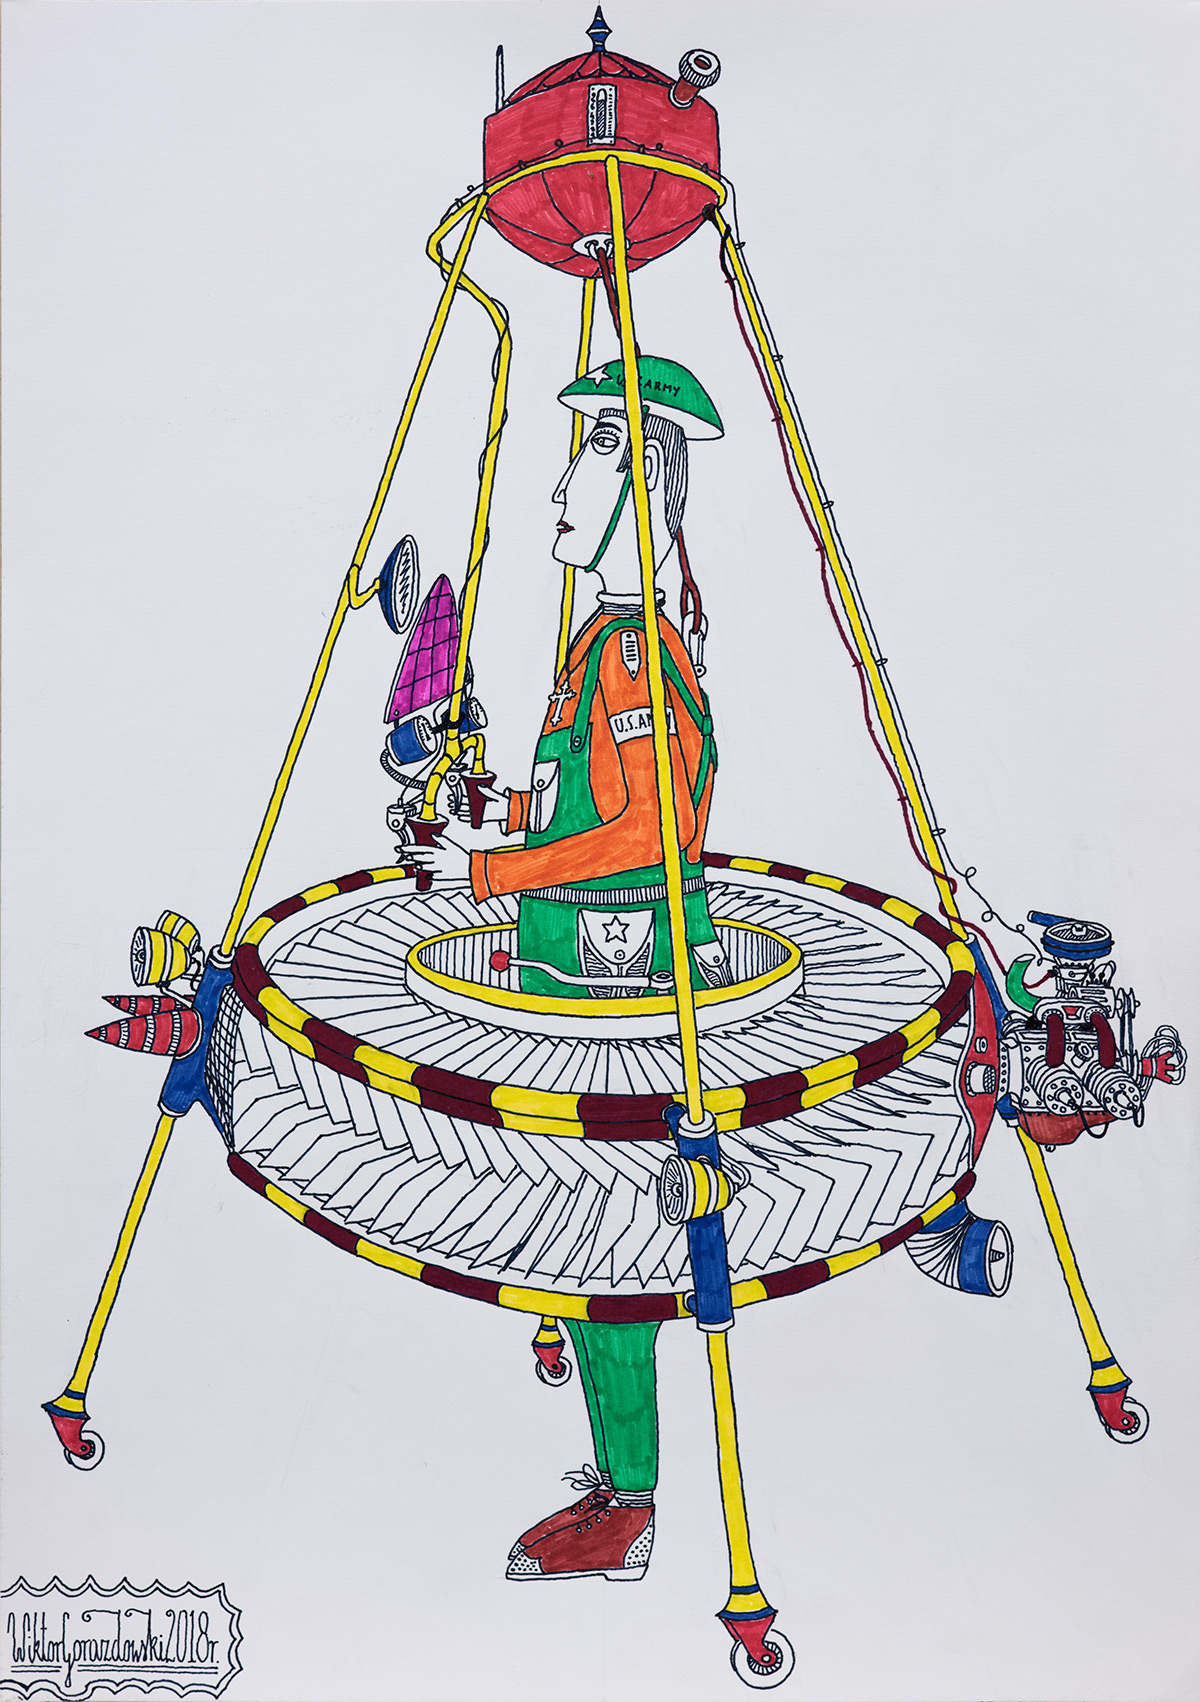 Wiktor Gorazdowski - Indywidualny zestaw latający Individual Flying Set (Fineliner and marker on paper | Wymiary: 30 x 42 cm | Cena: 900 PLN)